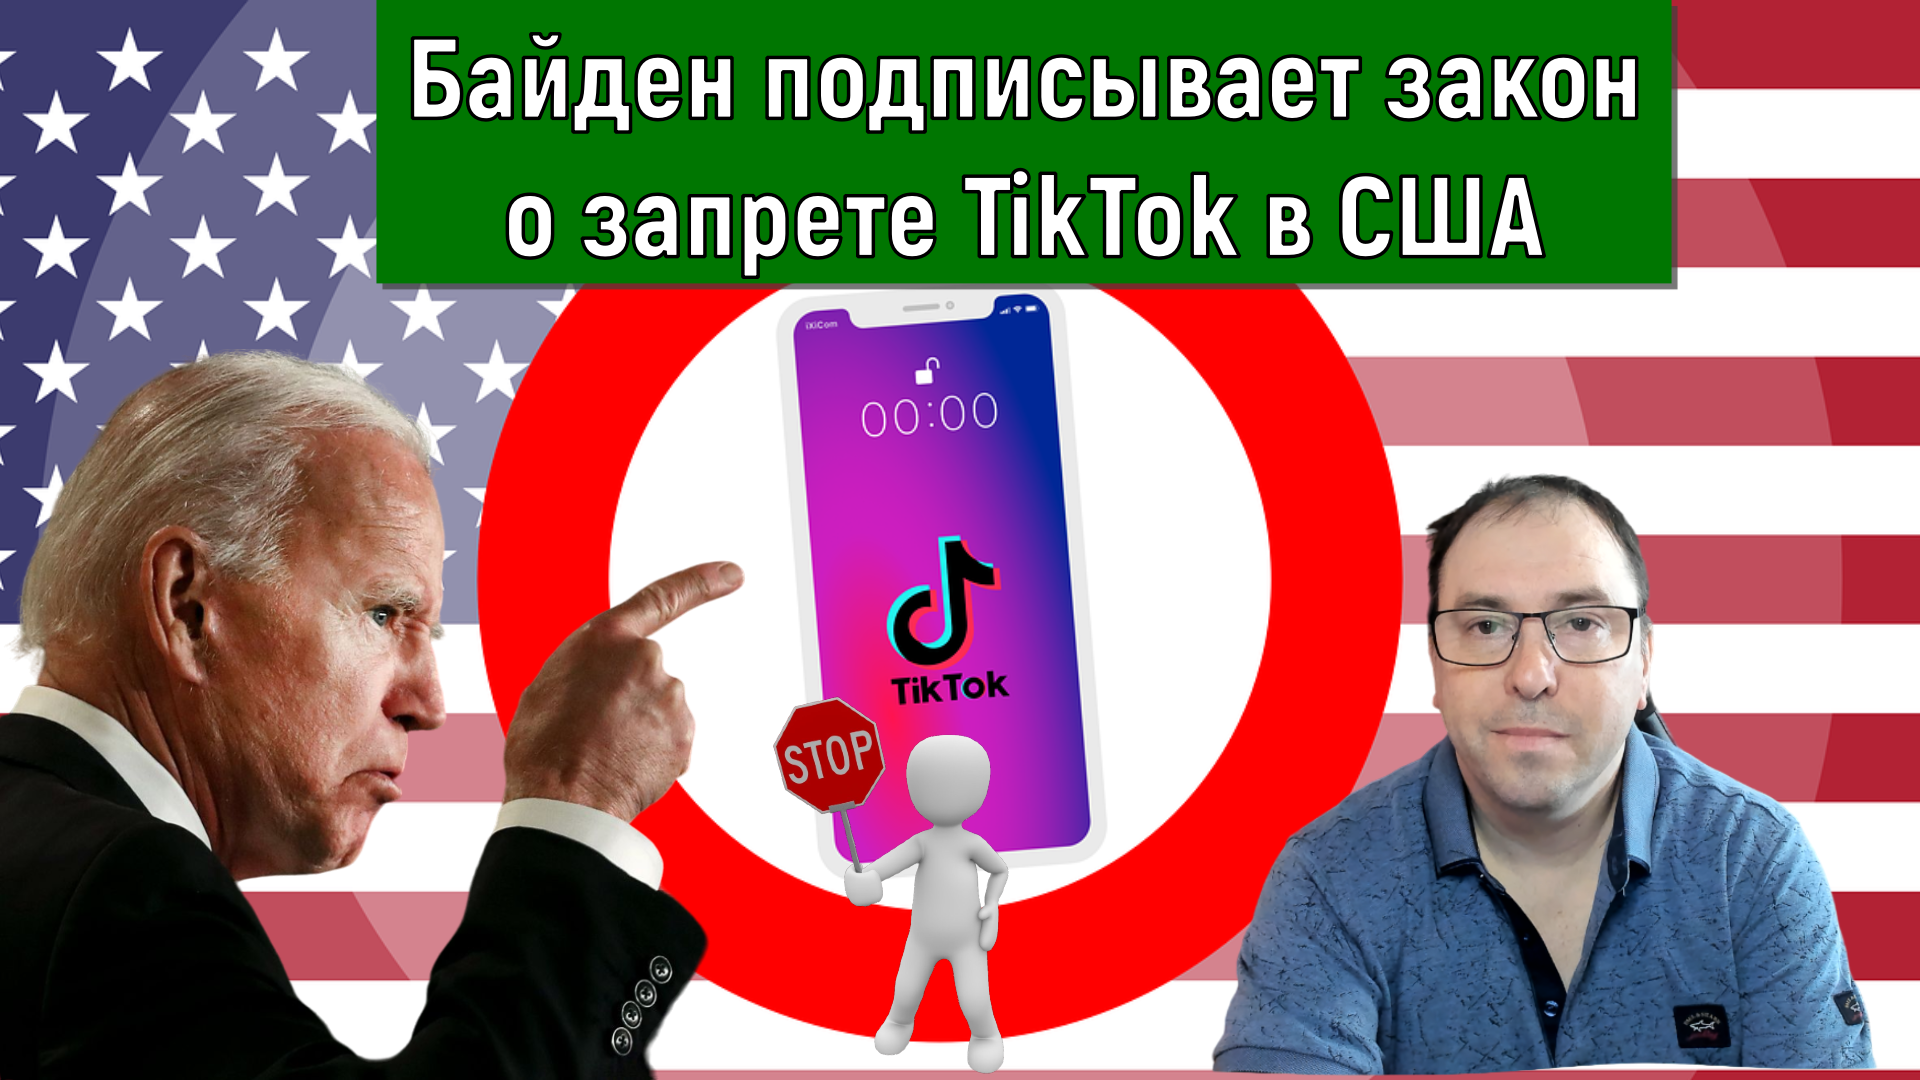 Байден подписывает закон о запрете TikTok в США